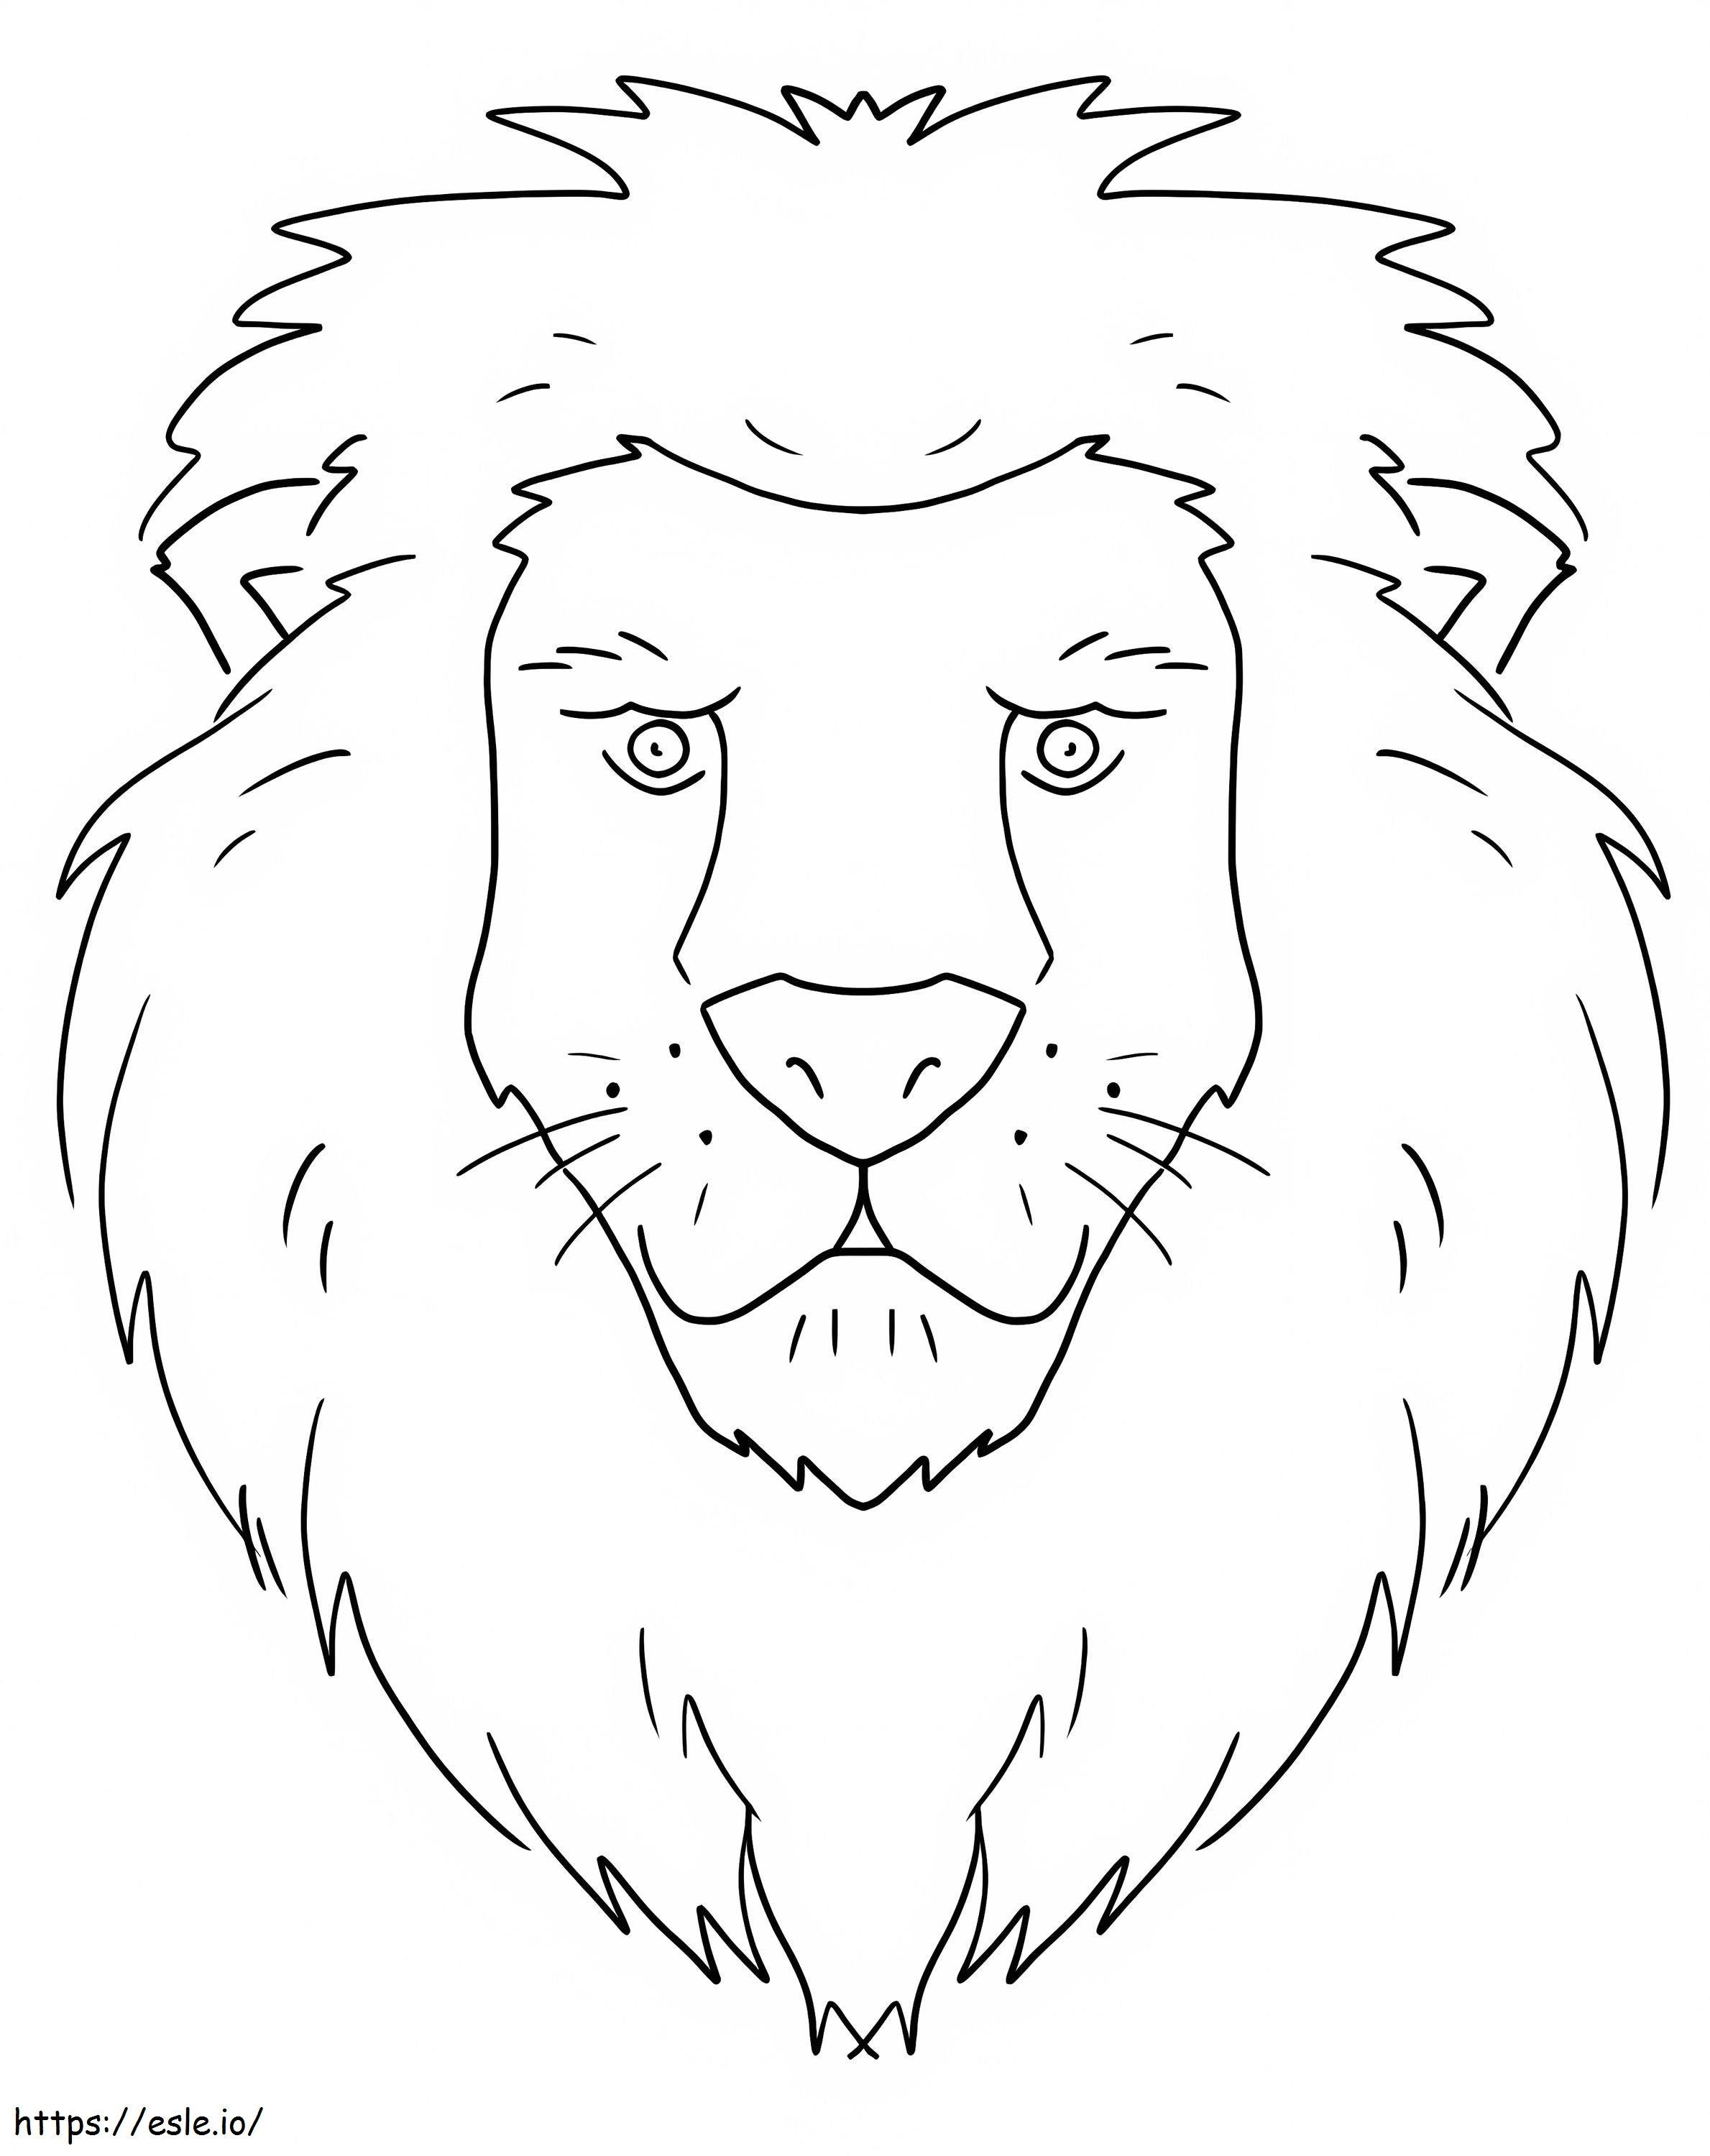 Cara de Leão Básica para colorir